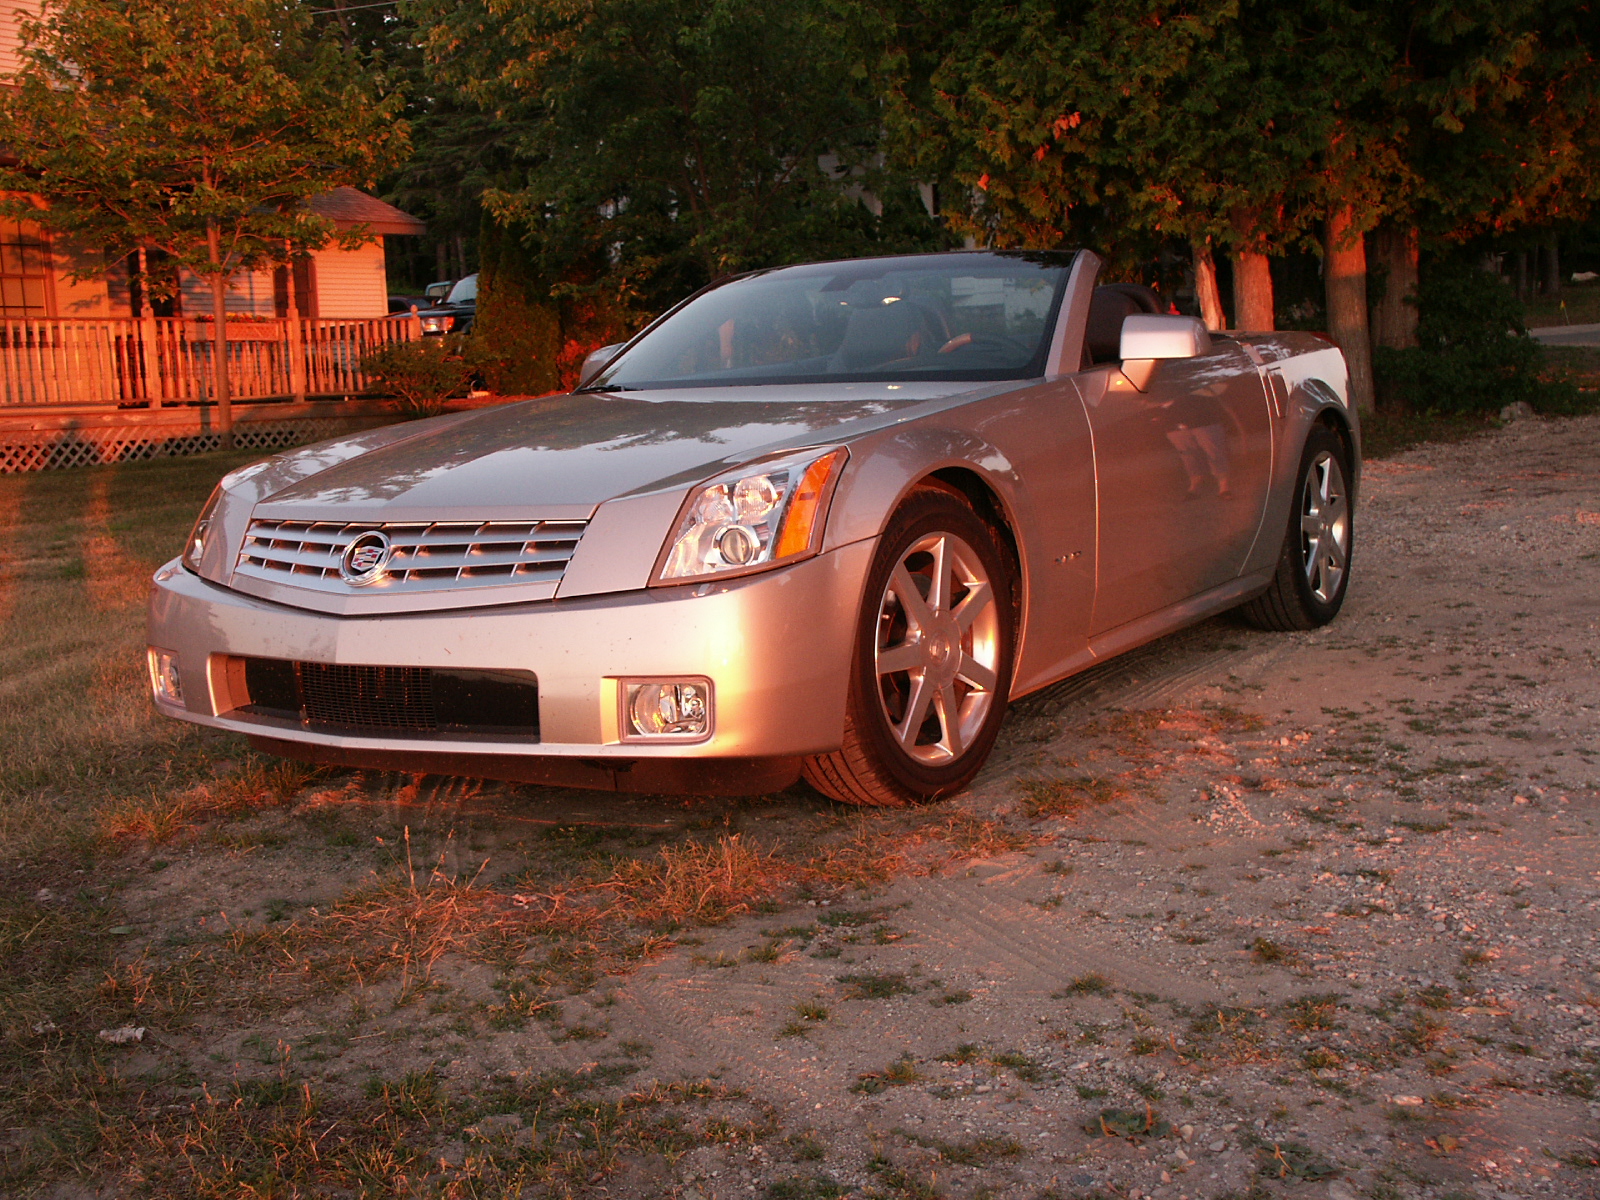 2005 Cadillac XLR at Sunset